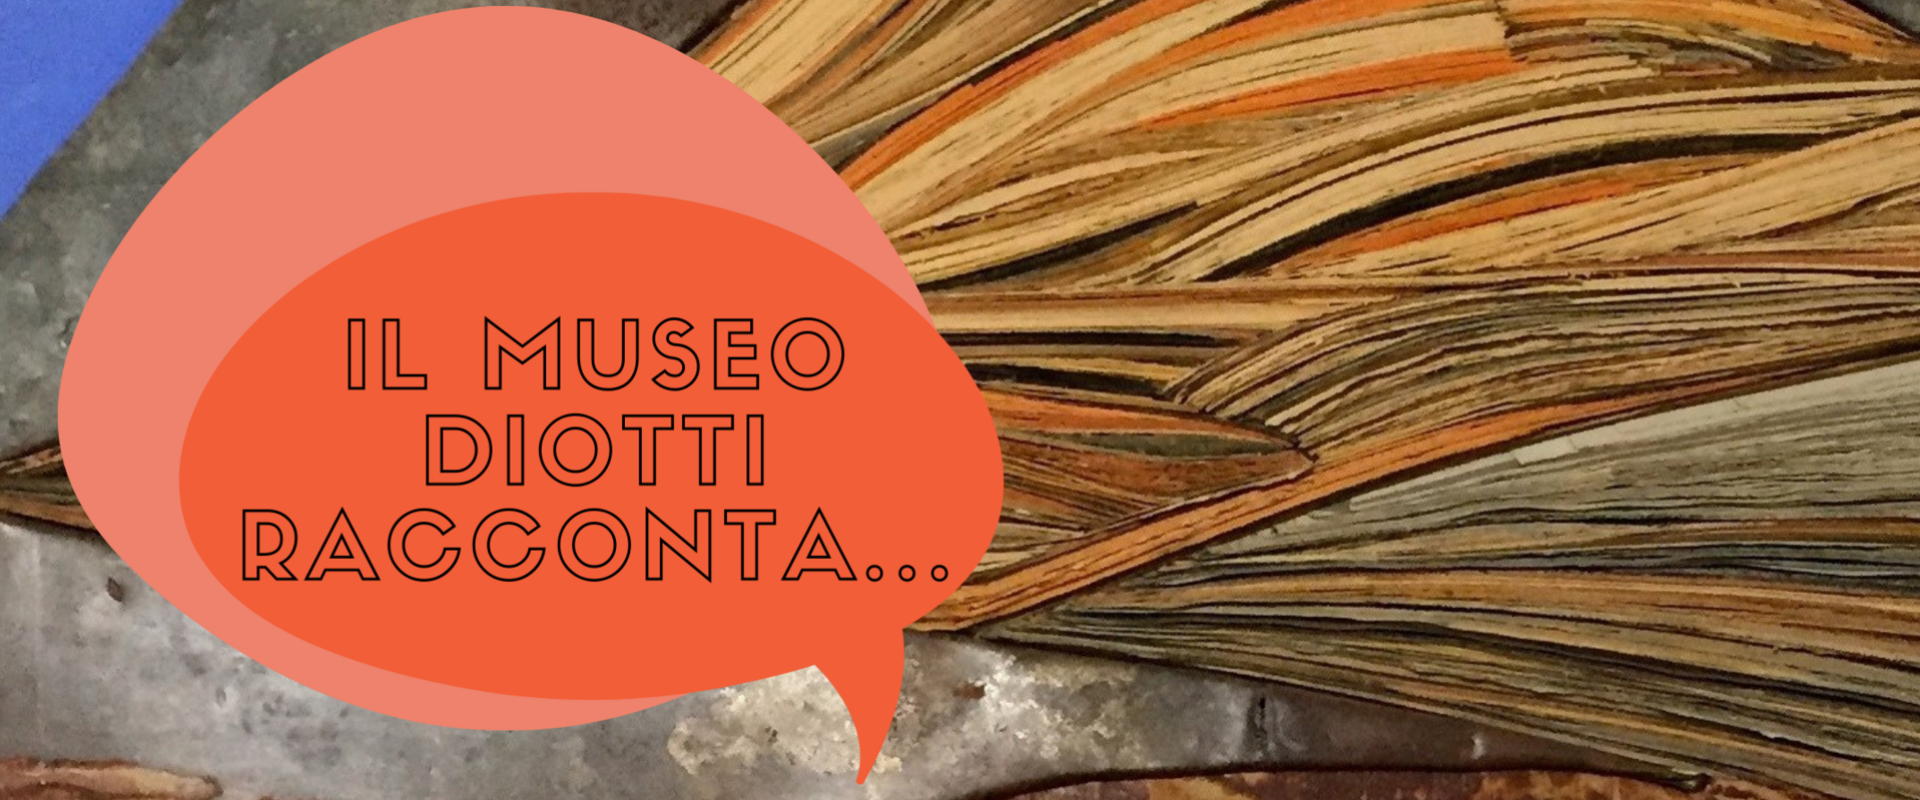 Diotti Museum Tells